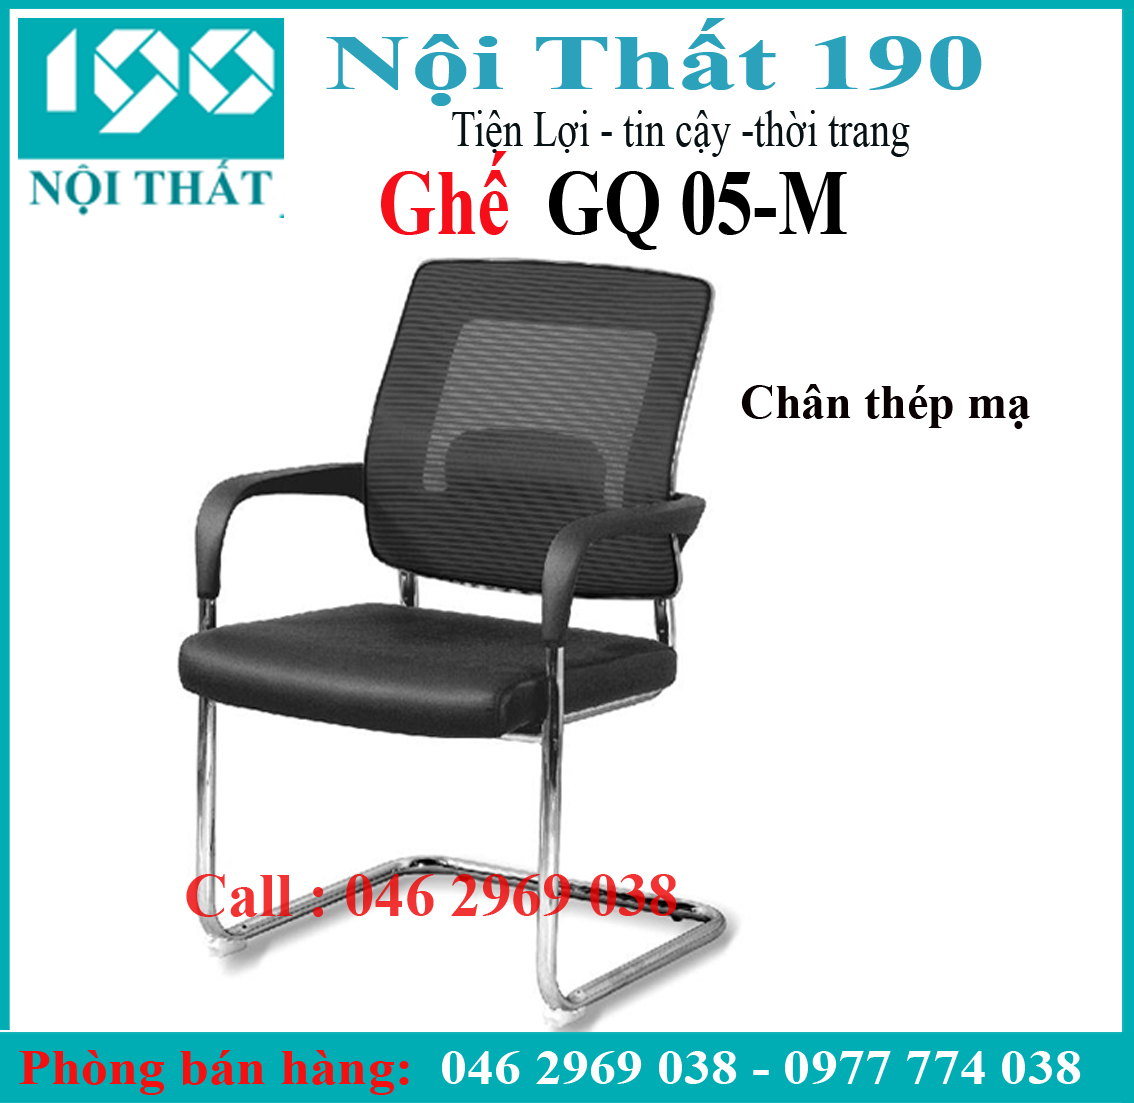 Ghế chân quỳ GQ05-M